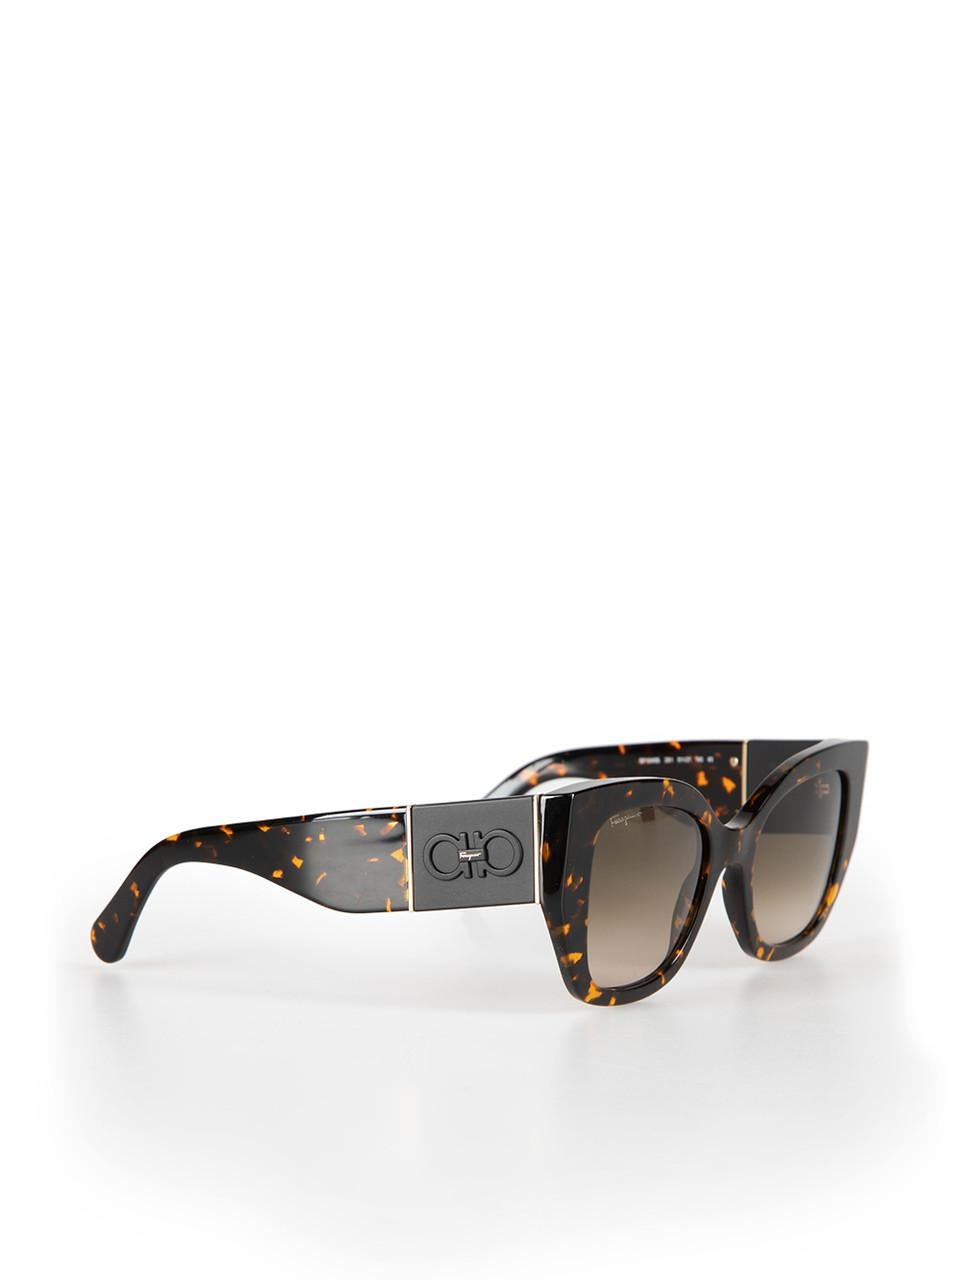 Salvatore Ferragamo Vintage Tortoise Square Frame Sunglasses In New Condition For Sale In London, GB